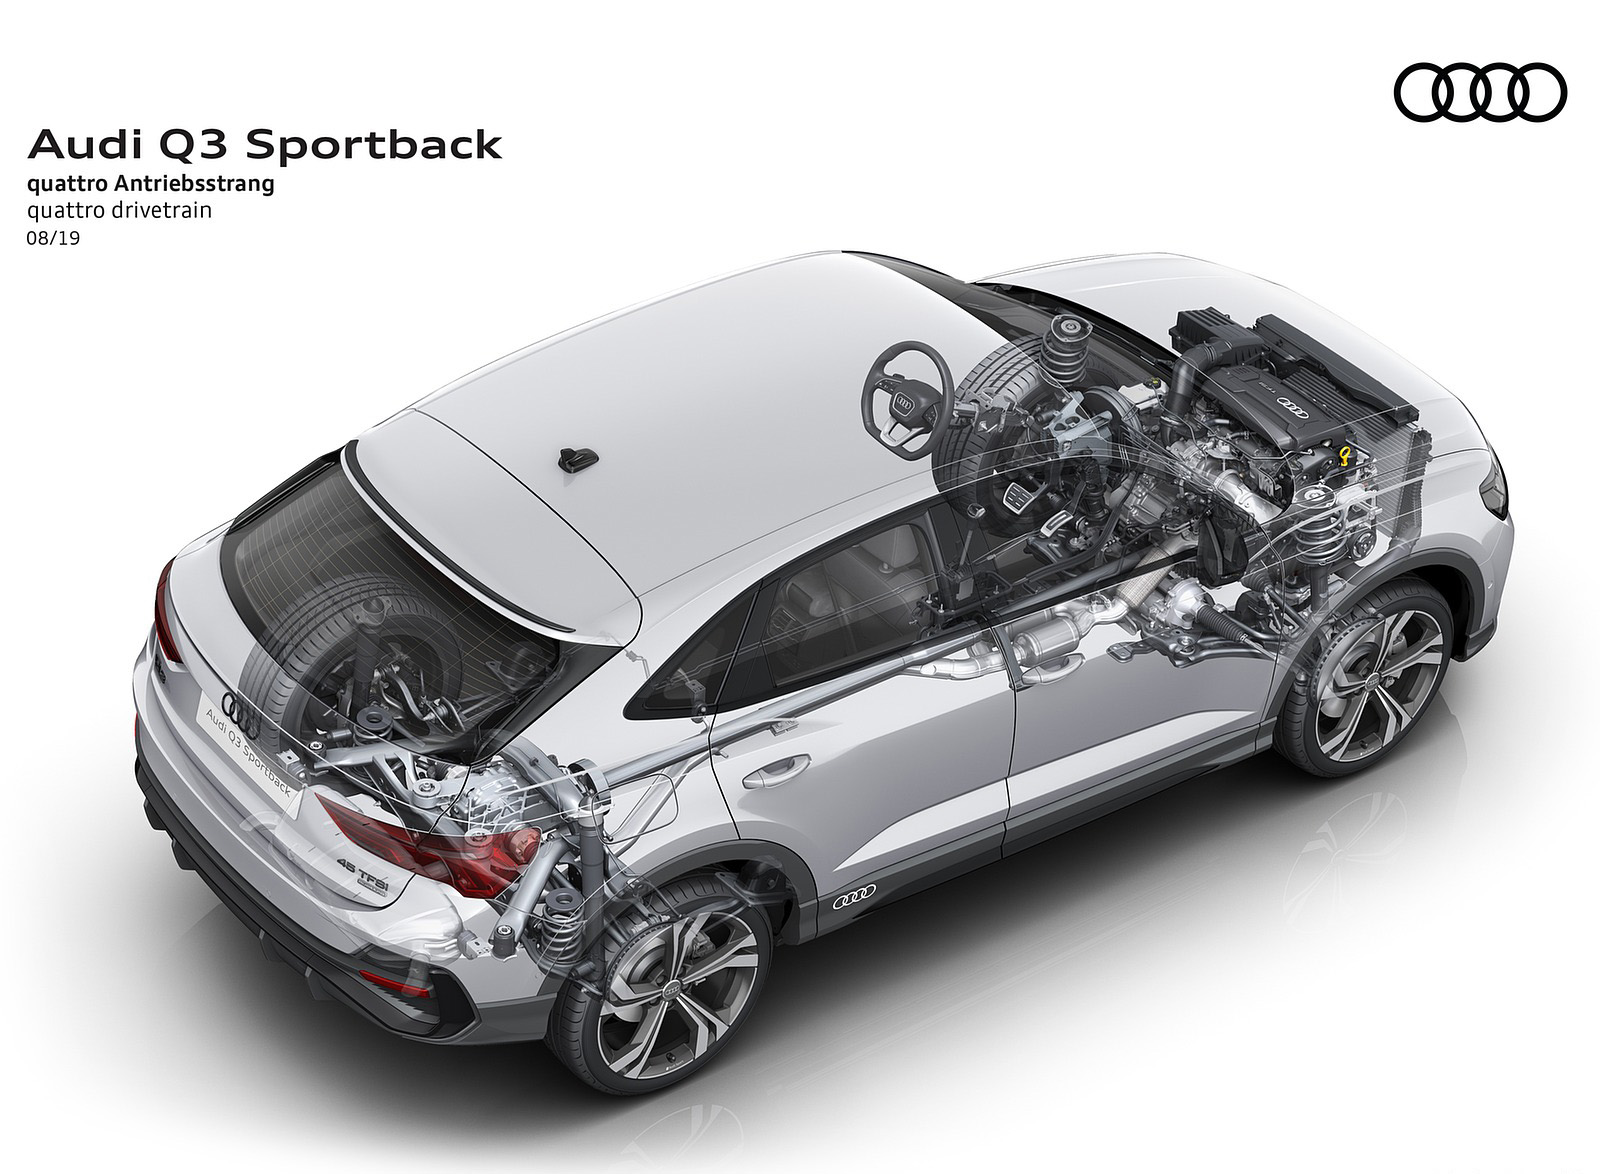 2020 Audi Q3 Sportback quattro drivetrain Wallpapers #258 of 285